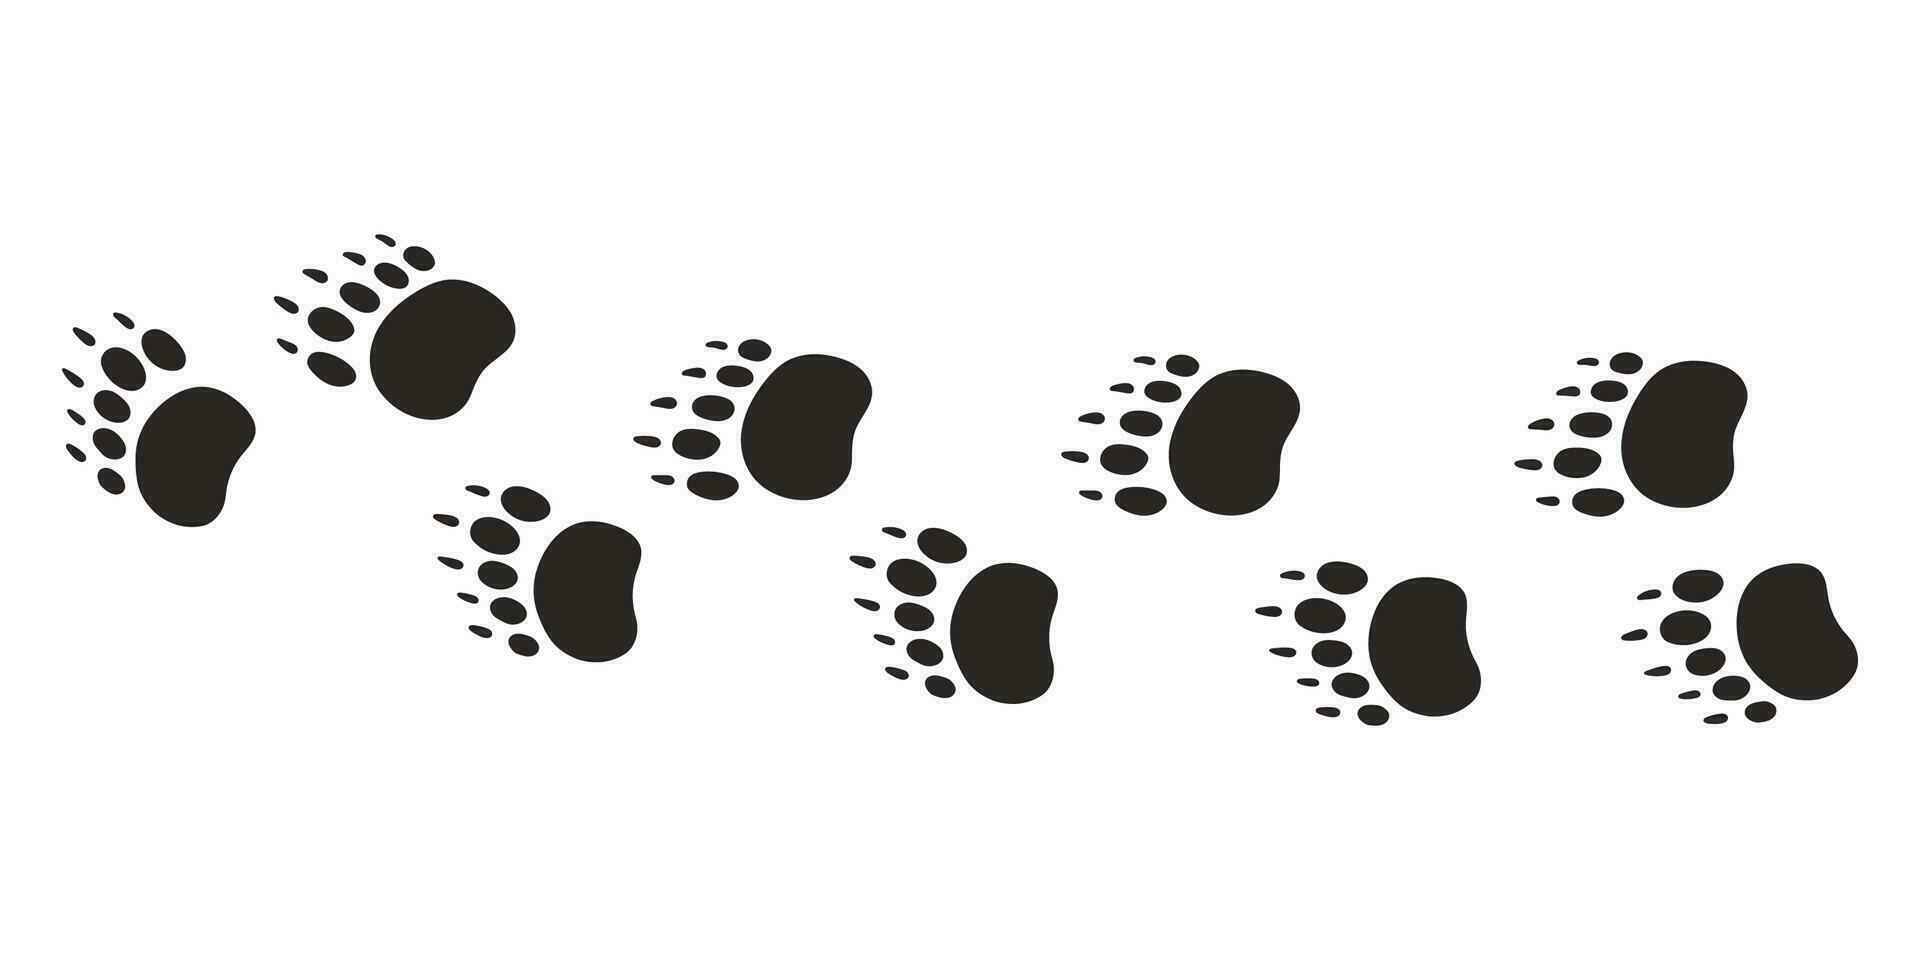 Björn tassar. djur- Tass grafik, vektor annorlunda djur fotspår svart på vit bakgrund illustration